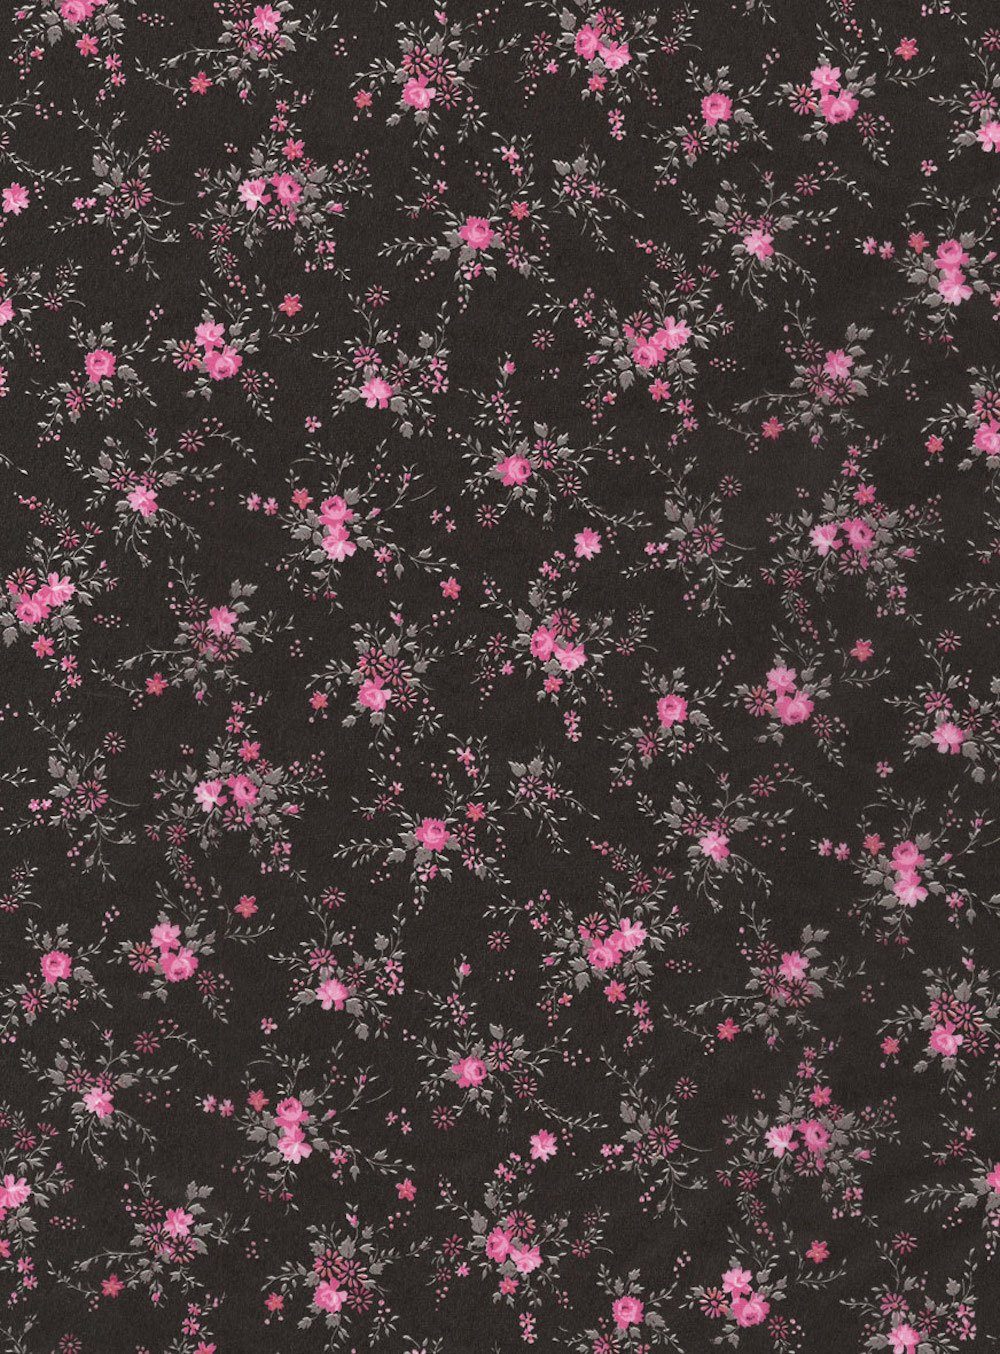 Zeichenpapier Blumenzweige Décopatch-Papier pink/schwarz, 30 H-Erzmade 565